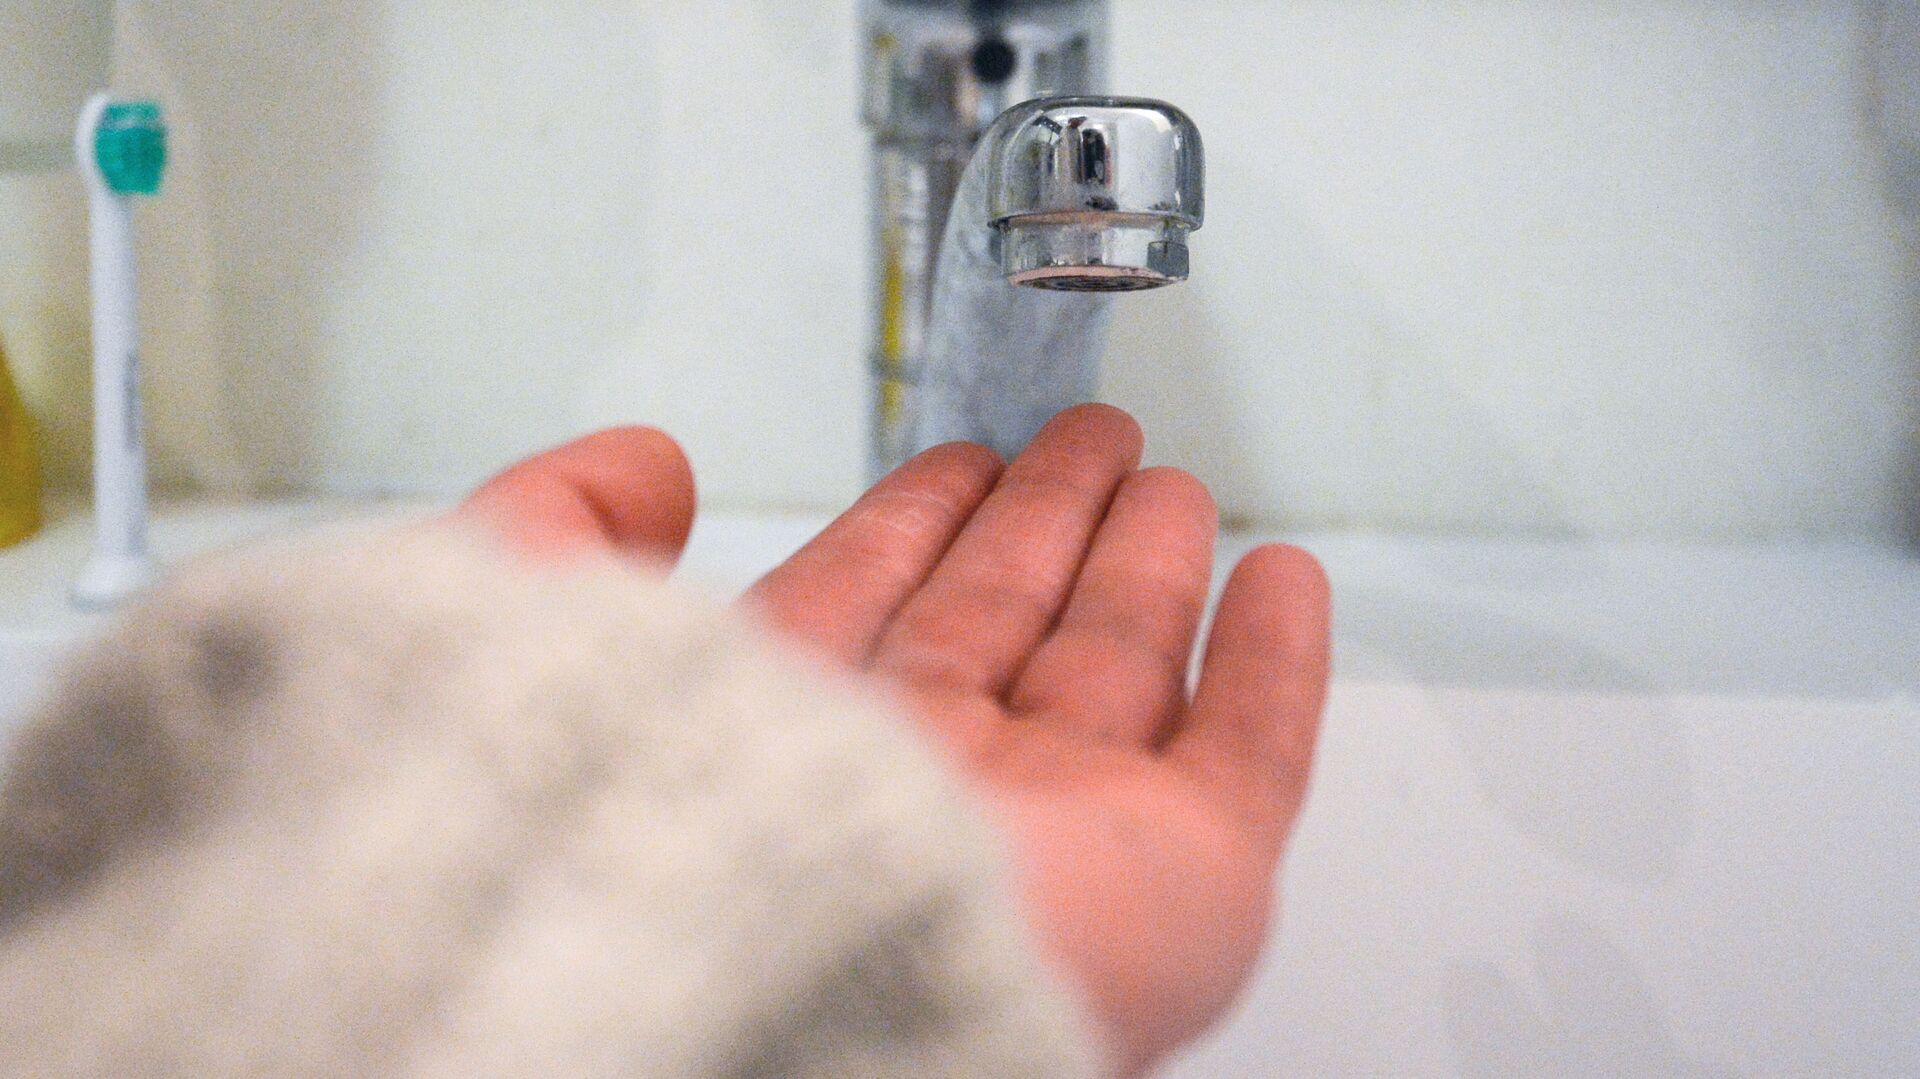 Кран в ванной комнате во время сезонного отключения горячей воды - РИА Новости, 1920, 16.11.2020